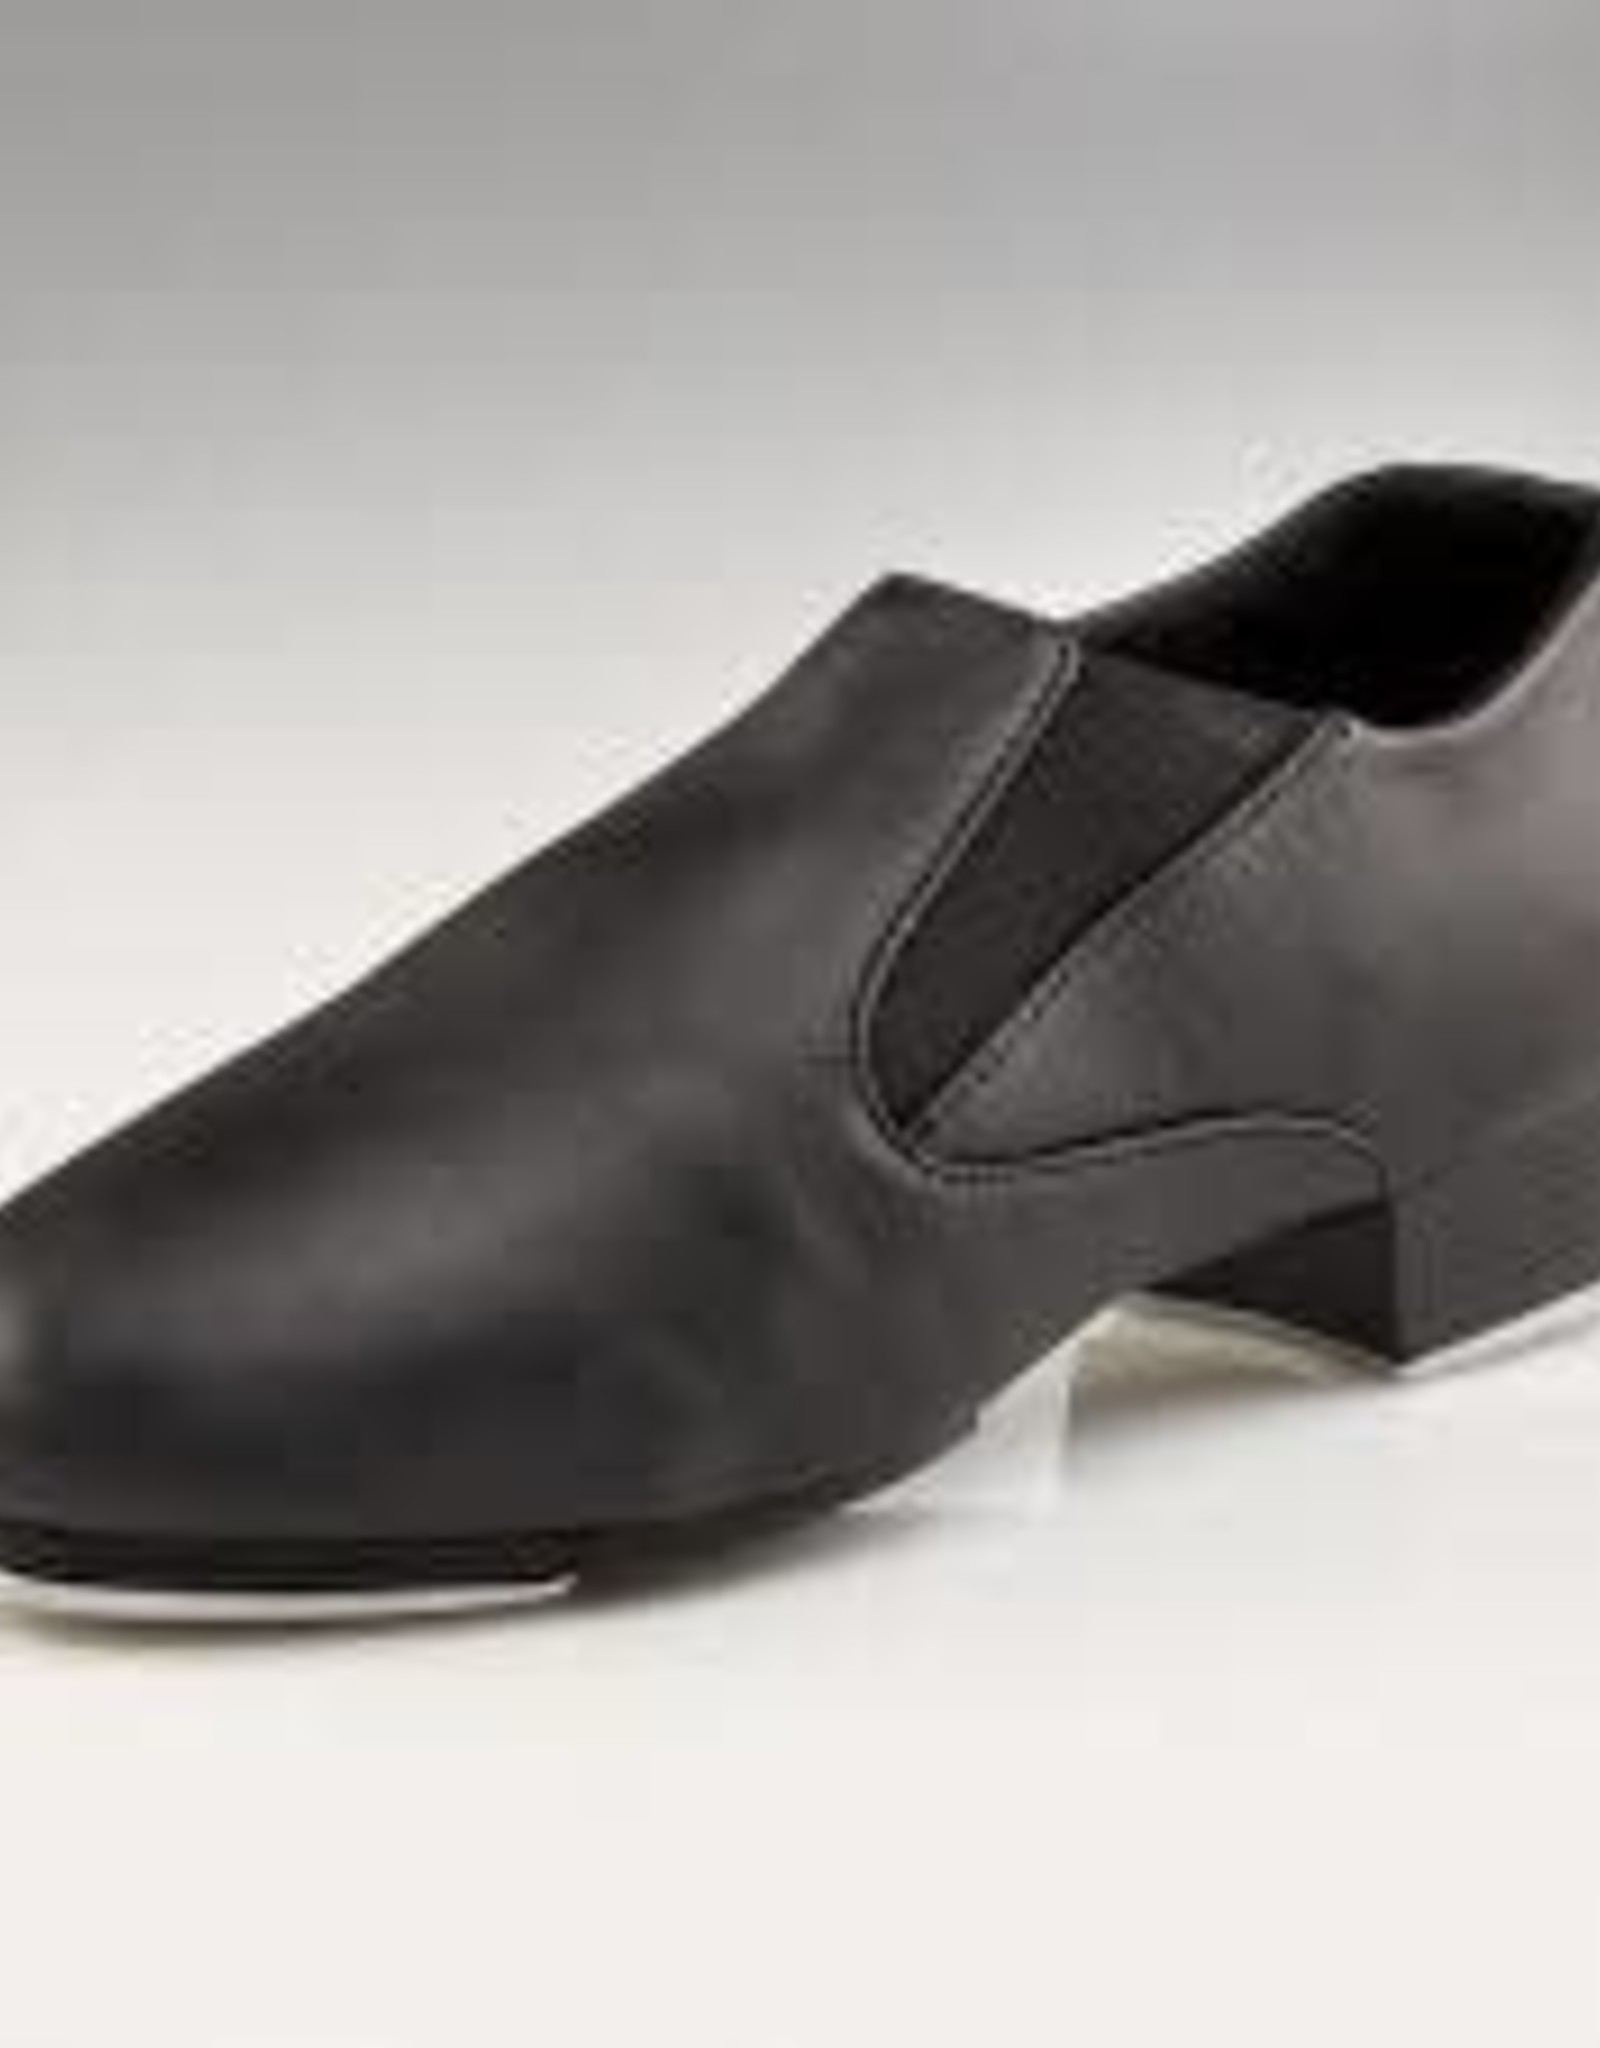 capezio tap dance shoes